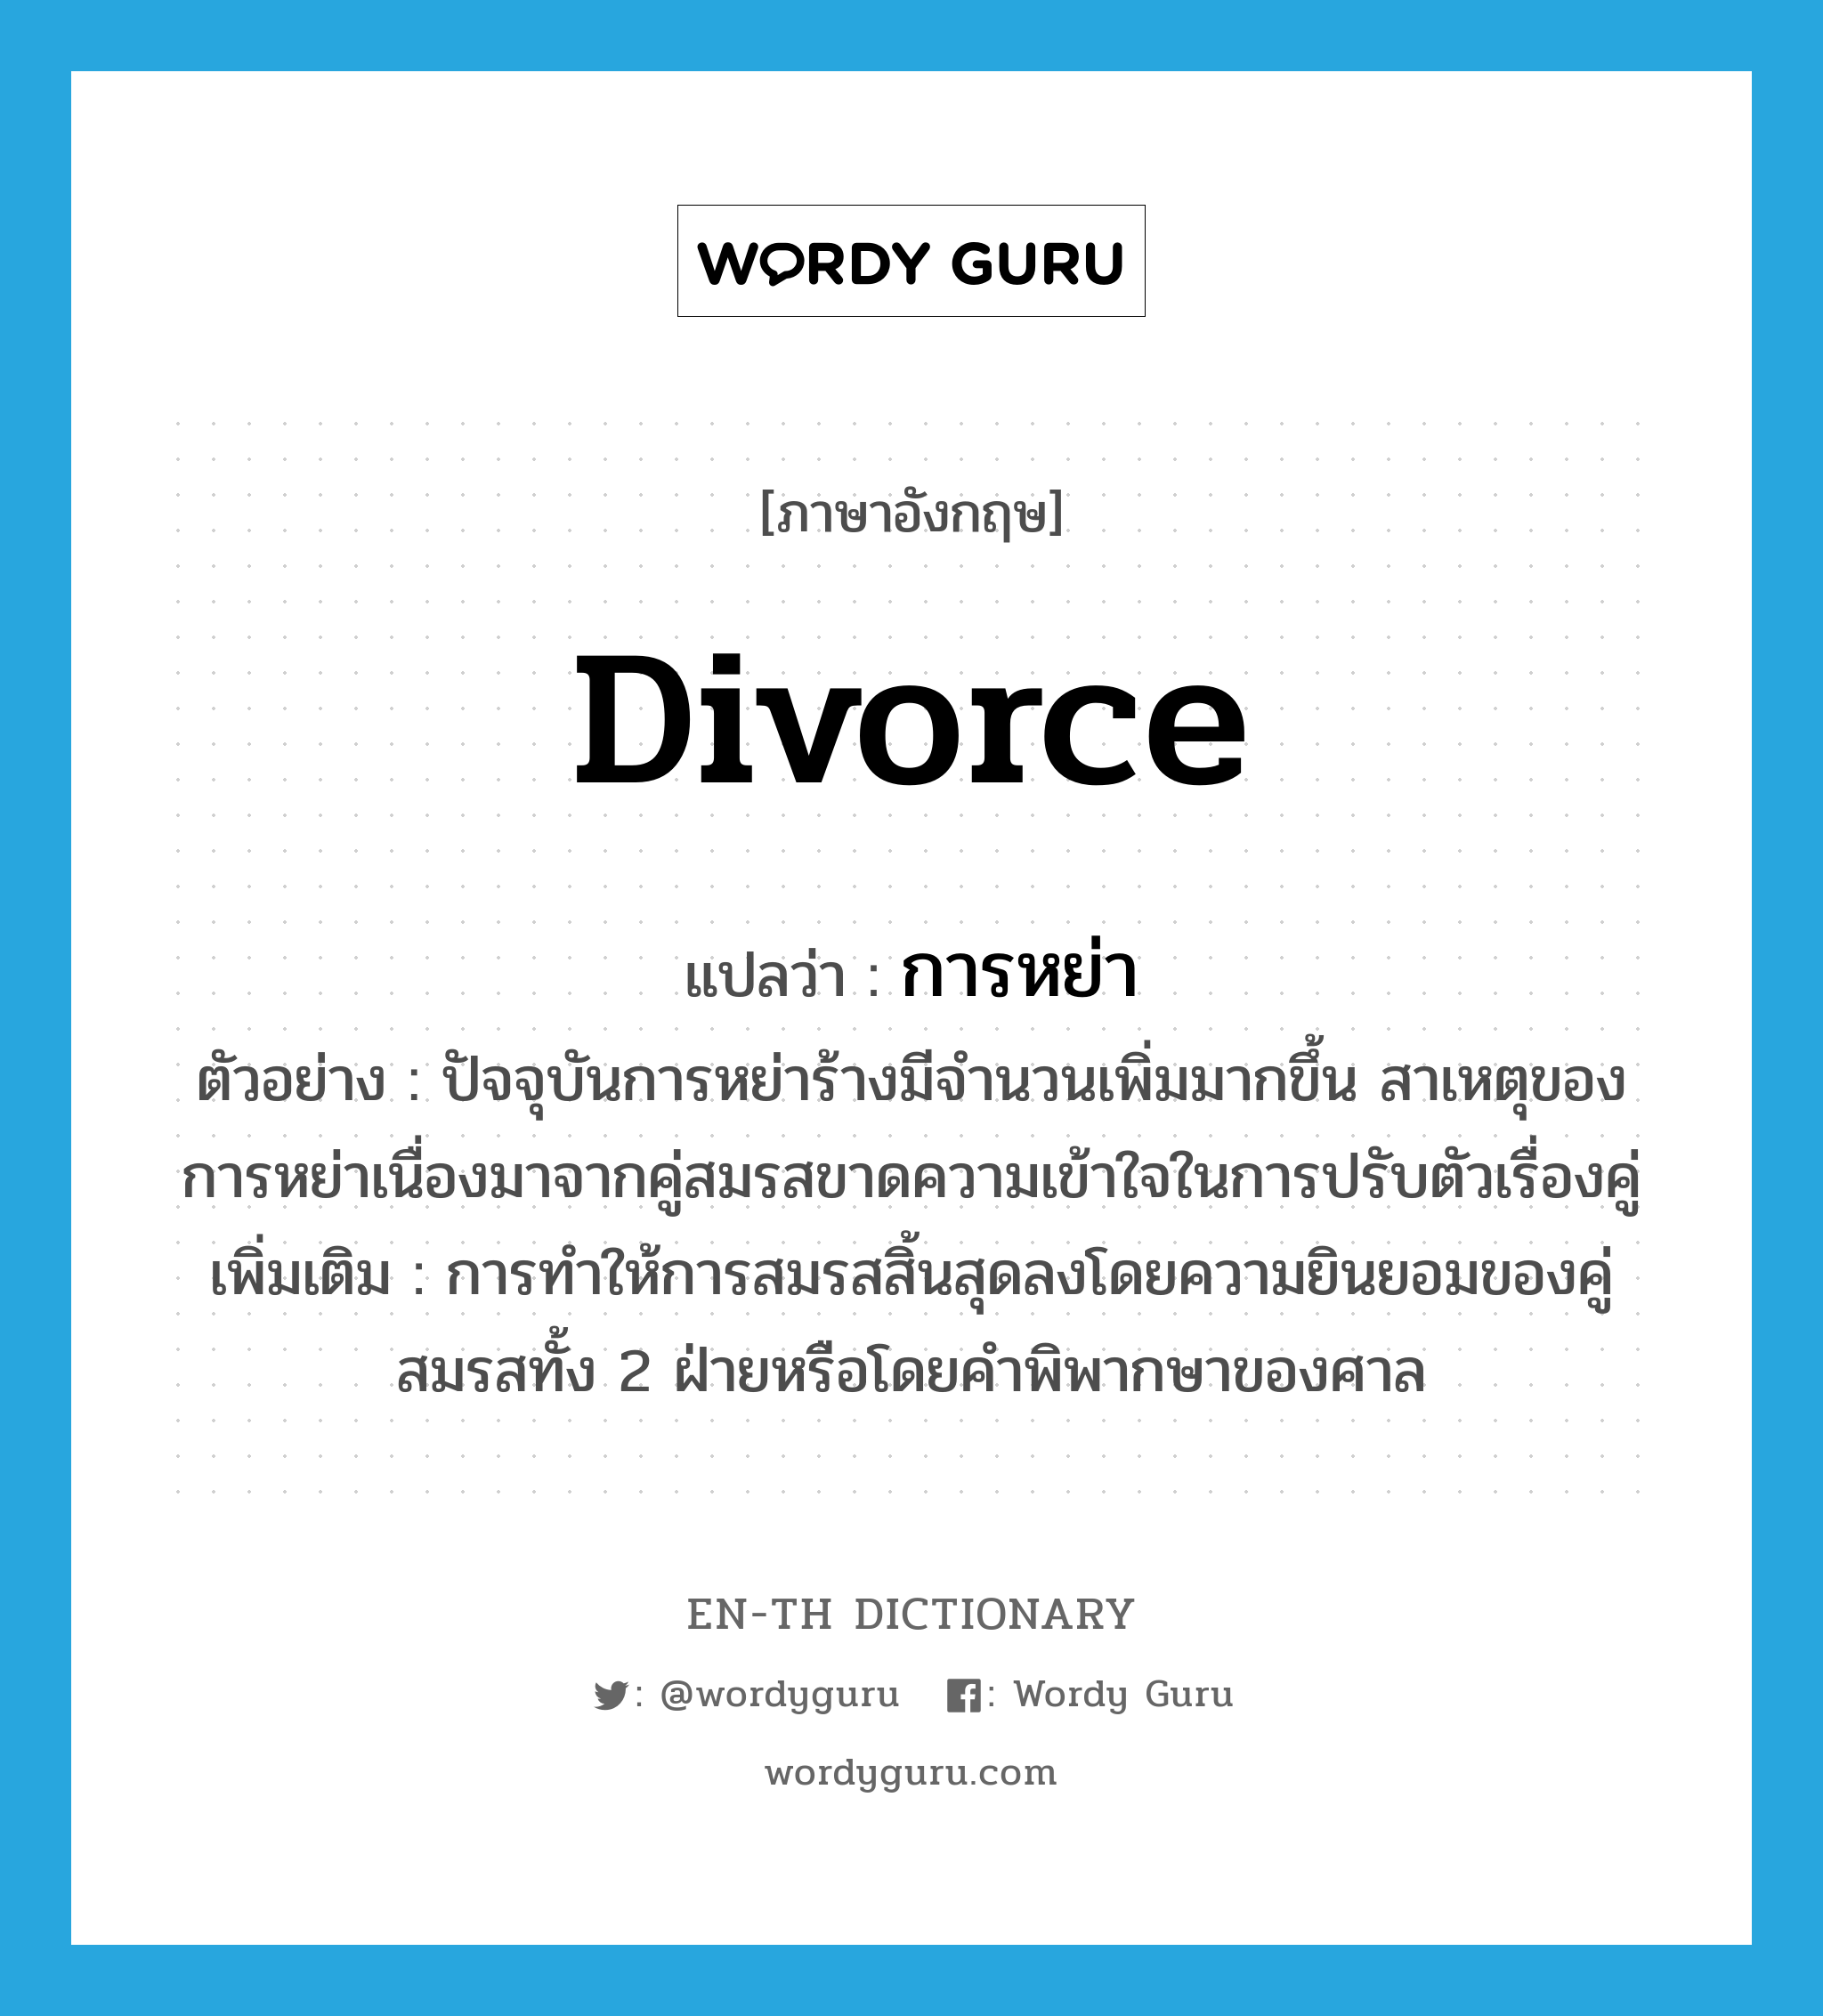 divorce แปลว่า?, คำศัพท์ภาษาอังกฤษ divorce แปลว่า การหย่า ประเภท N ตัวอย่าง ปัจจุบันการหย่าร้างมีจำนวนเพิ่มมากขึ้น สาเหตุของการหย่าเนื่องมาจากคู่สมรสขาดความเข้าใจในการปรับตัวเรื่องคู่ เพิ่มเติม การทำให้การสมรสสิ้นสุดลงโดยความยินยอมของคู่สมรสทั้ง 2 ฝ่ายหรือโดยคำพิพากษาของศาล หมวด N